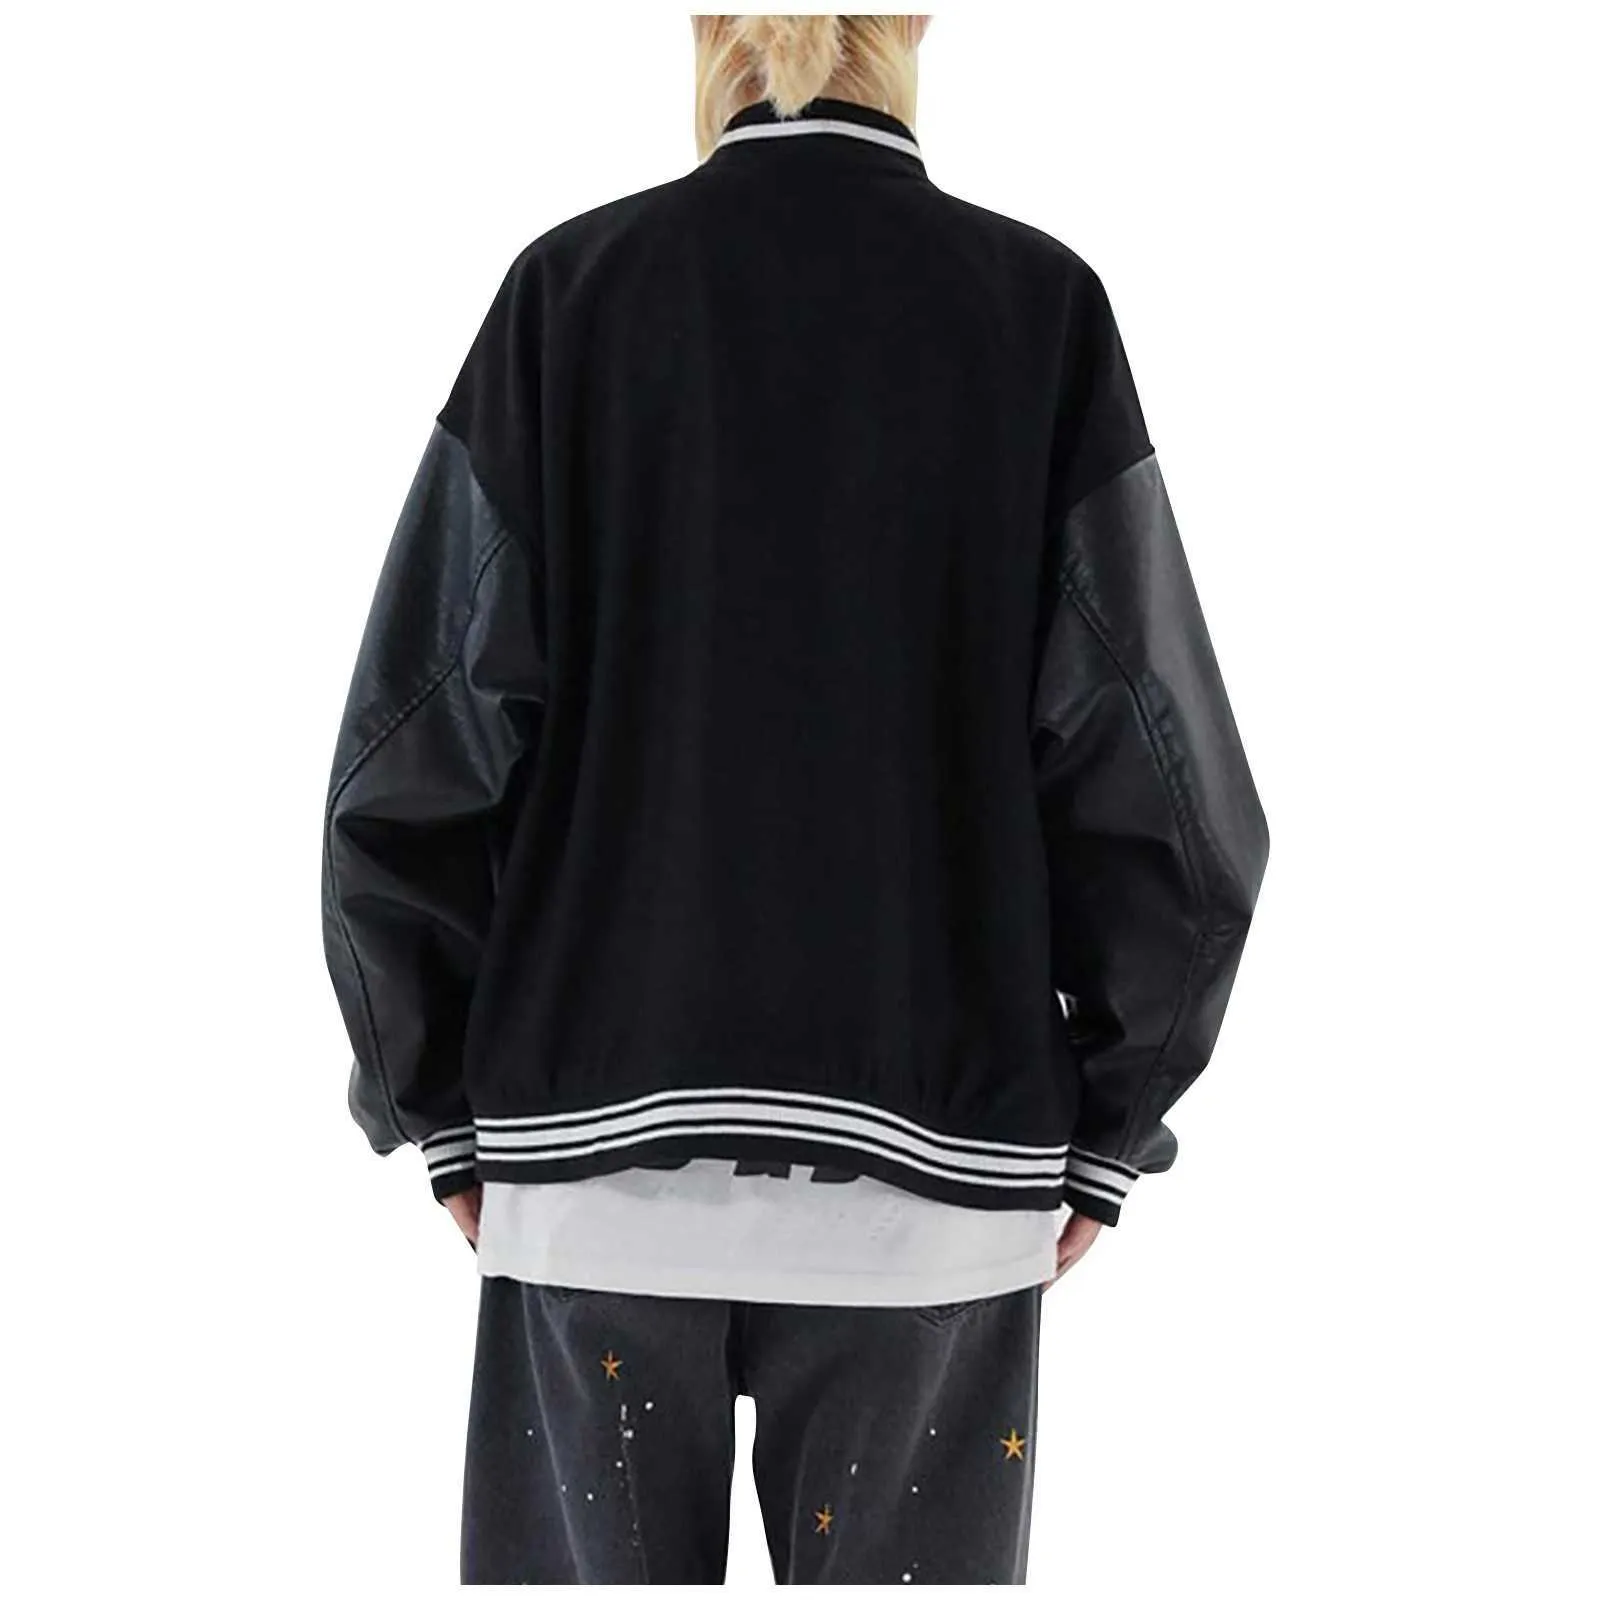 Mode Stilvolle Britische Jacken 2021 Hip Hop Streetwear Baseball Jacke Mantel Buchstabe B Knochen Stickerei Bomber College Jacke # f4 X0621